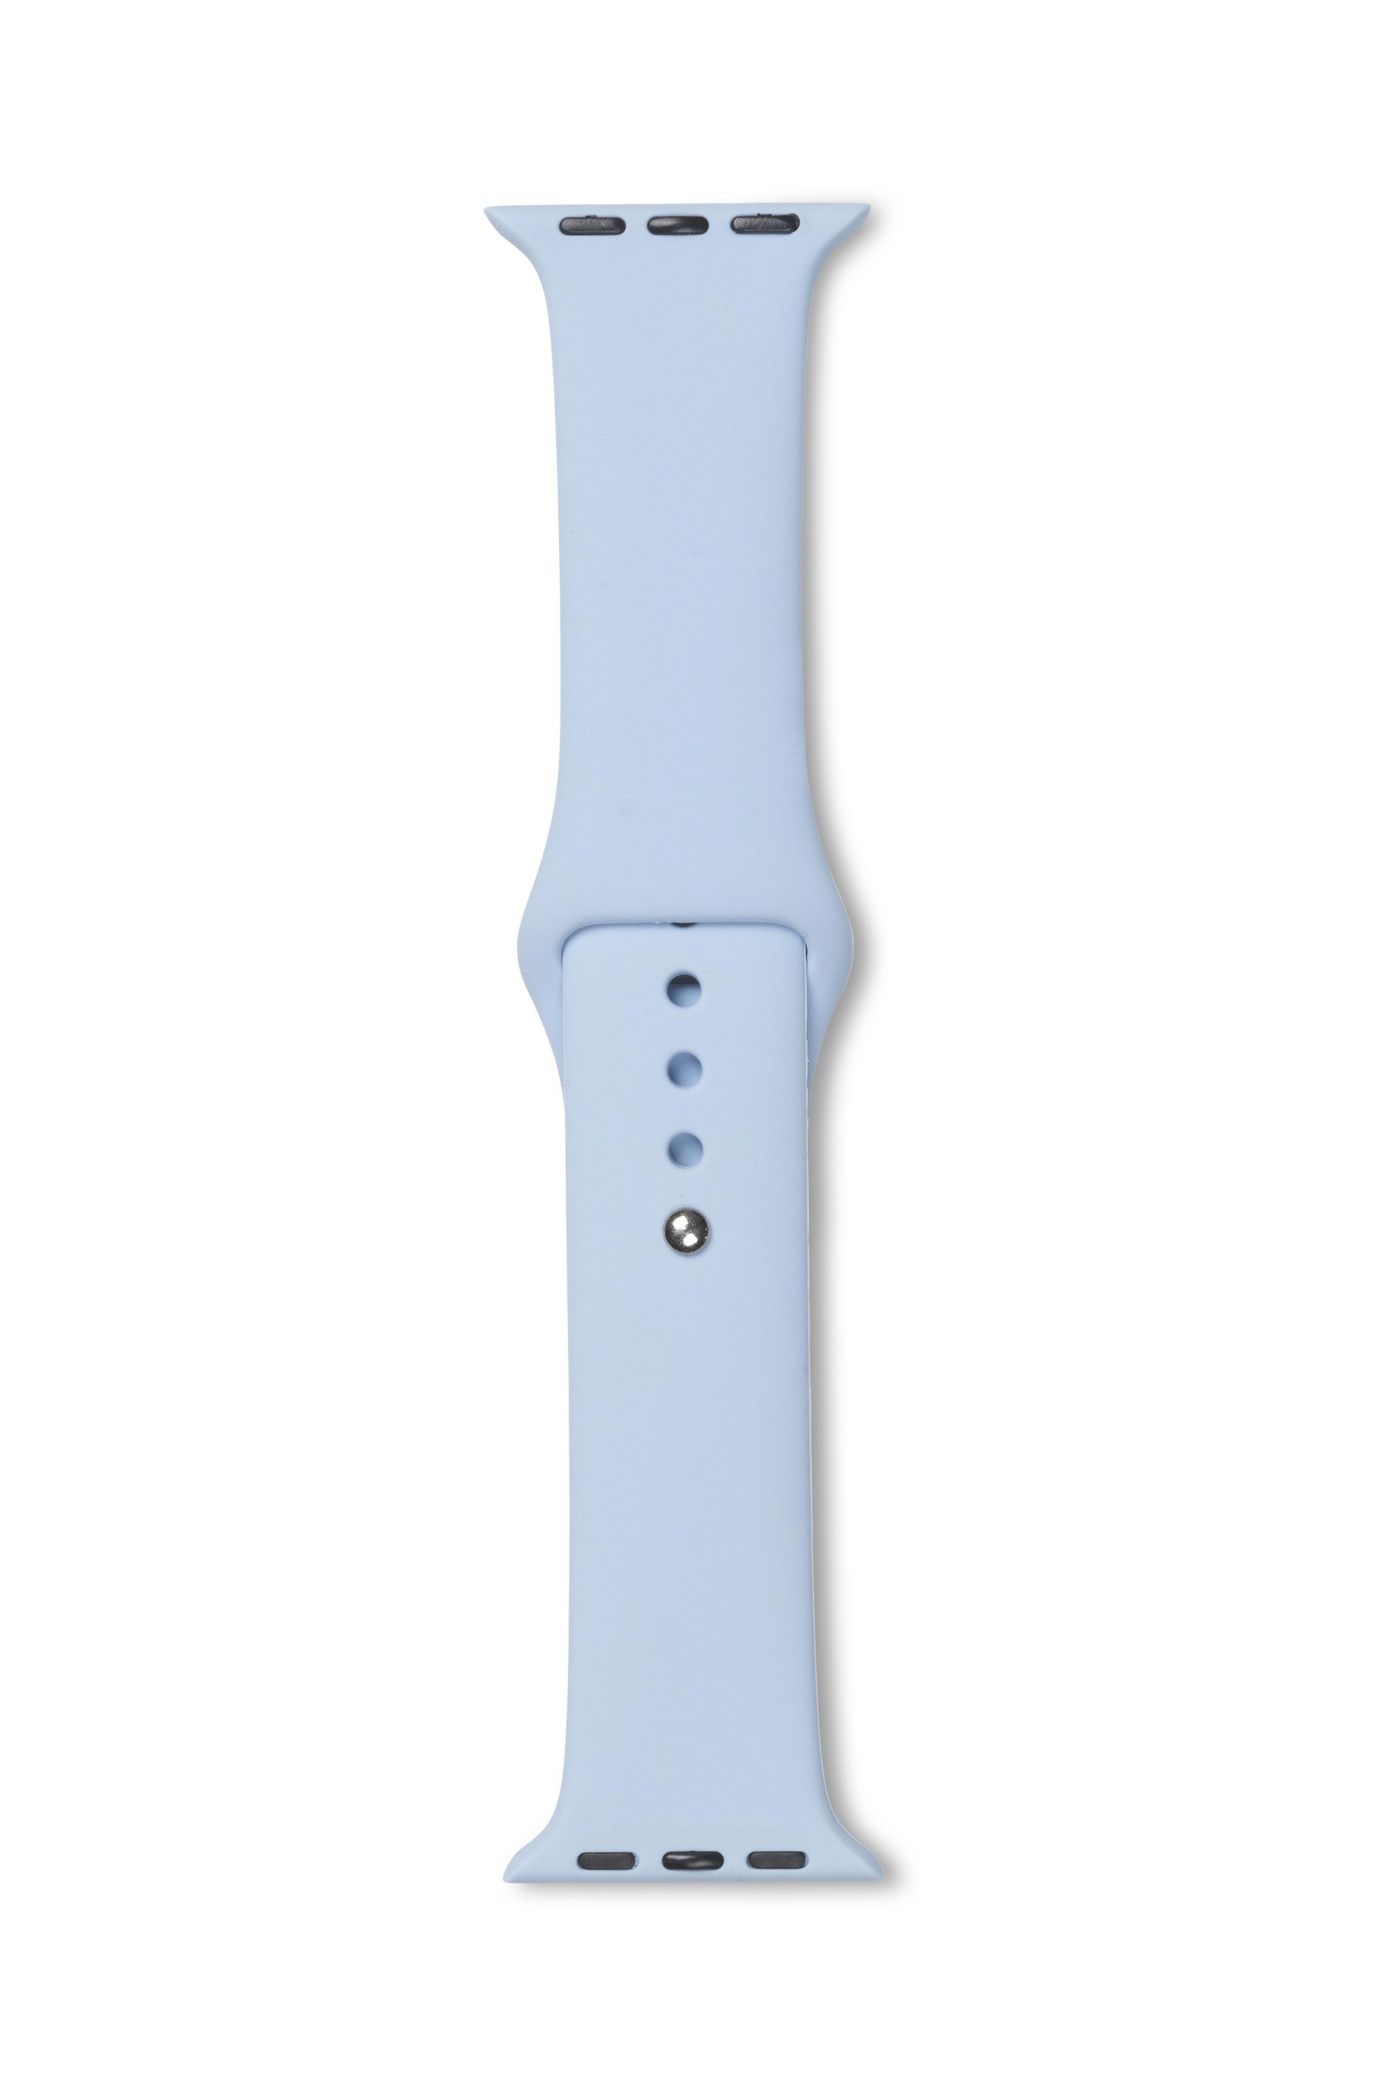 ESTUFF ES660147 - Band - Smartwatch - Blau - Apple - Watch 40mm - Silikon (ES660147)